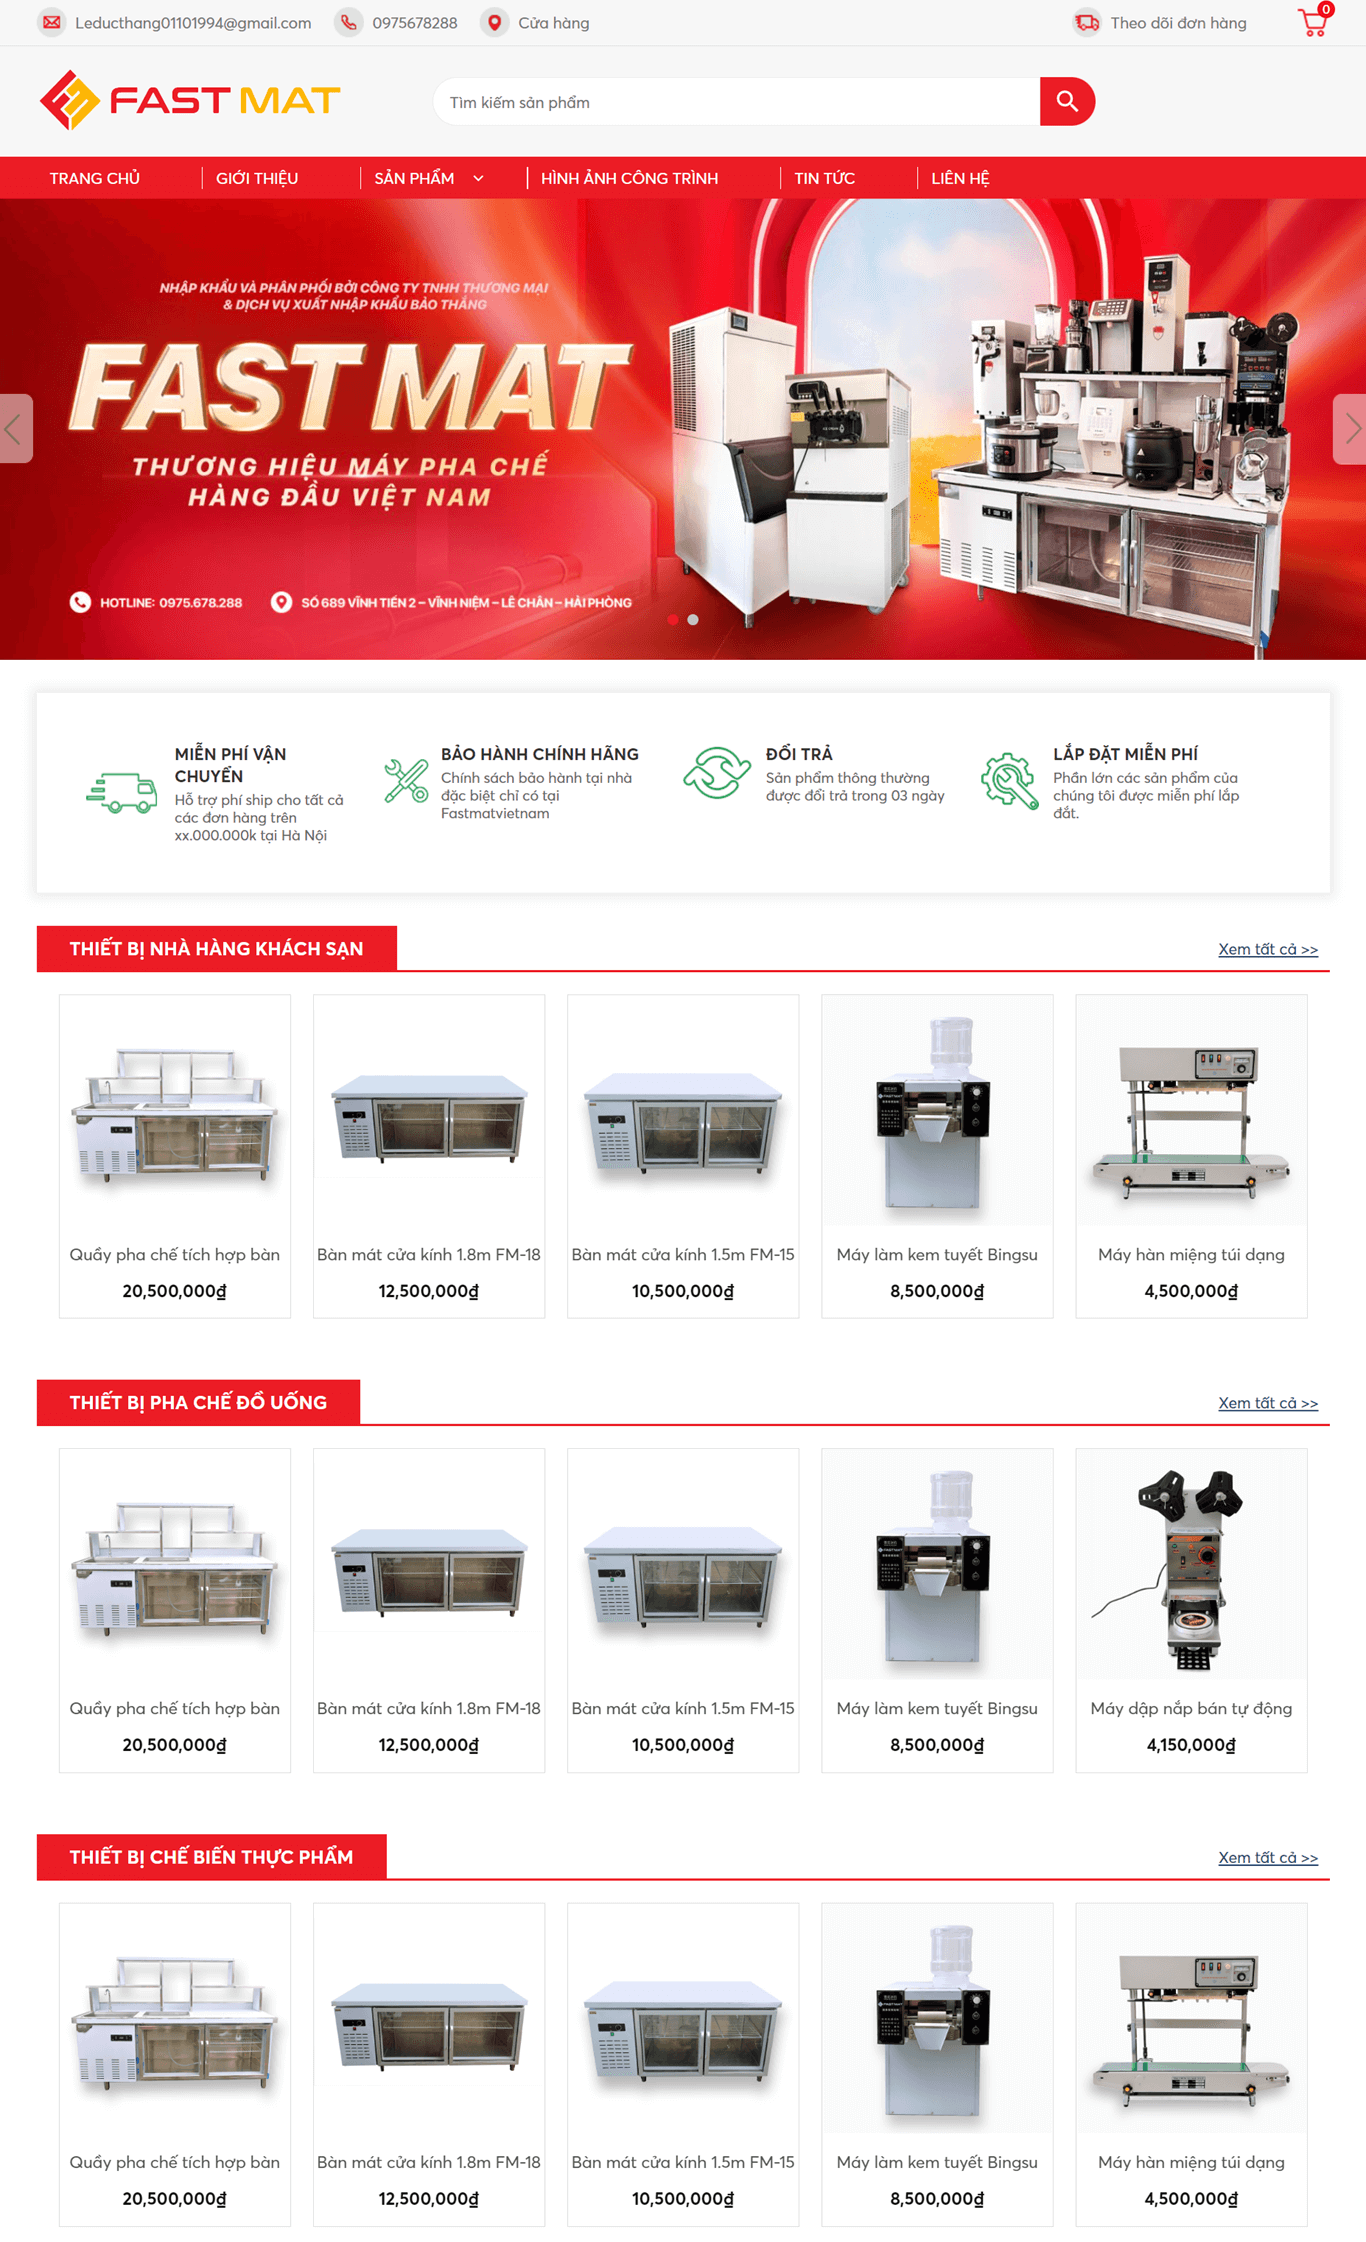 Thiết kế website bán hàng FastMat Việt Nam